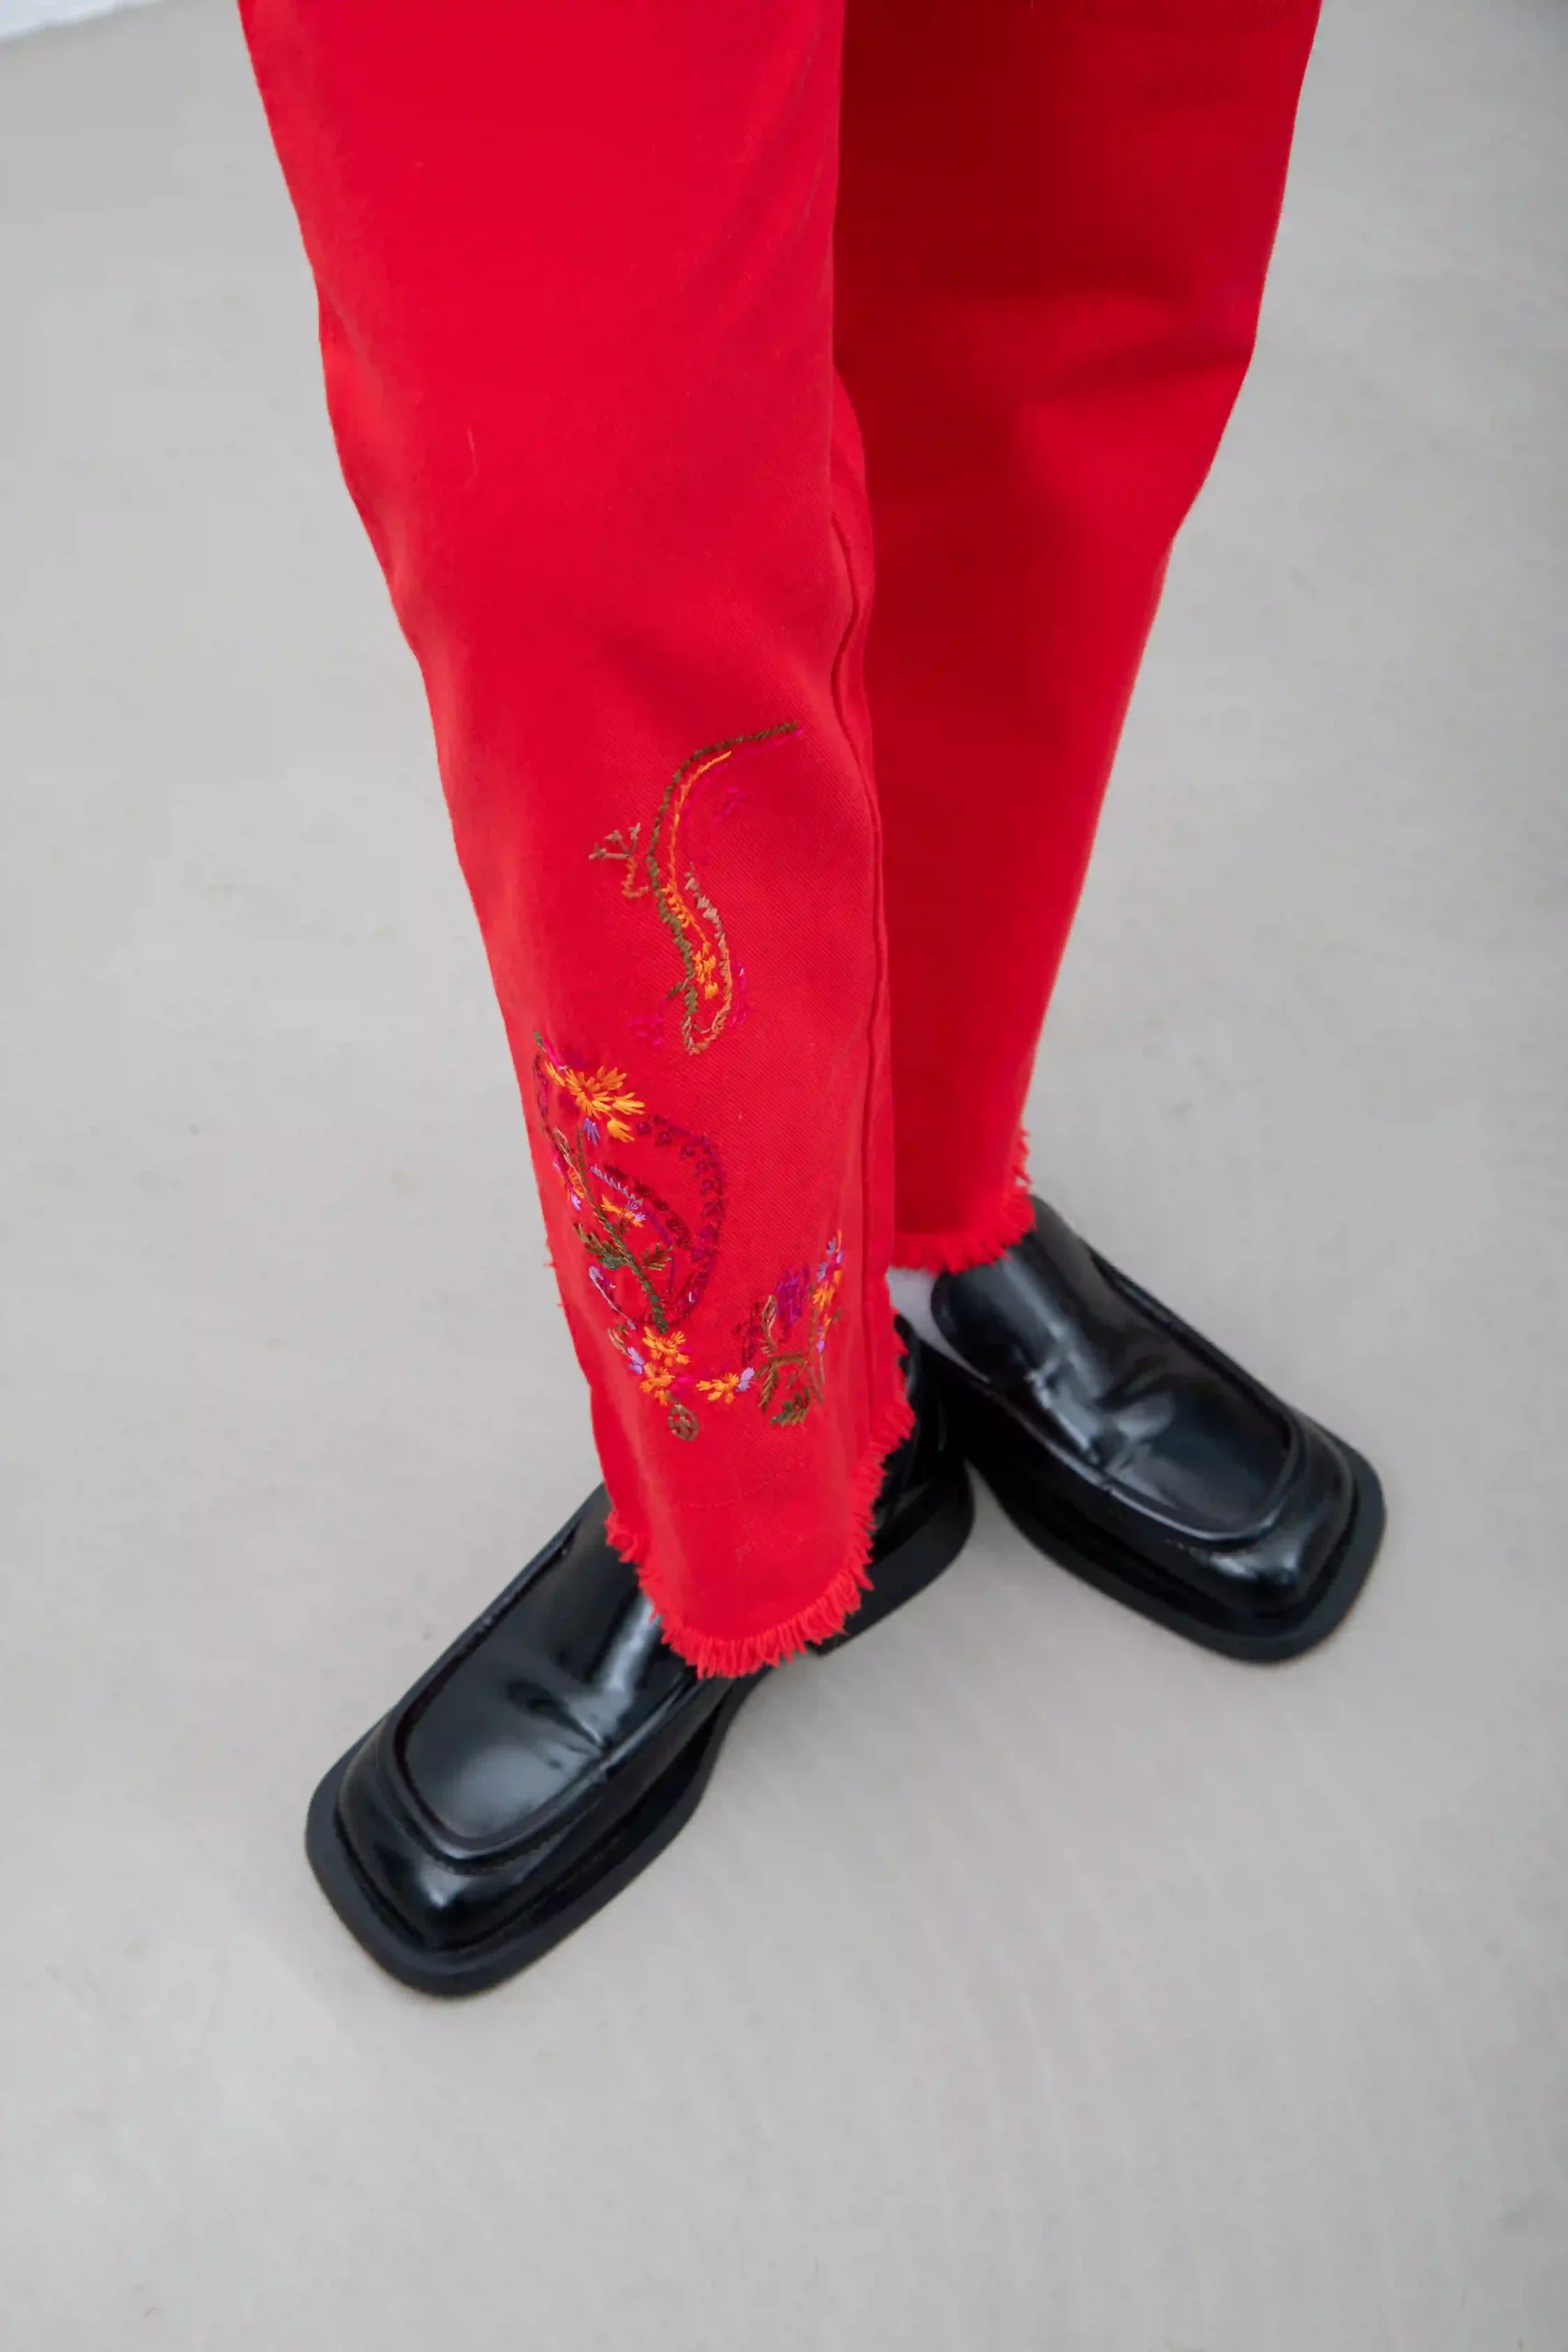 Pantalone Stefanel in drill di 100% cotone, rosso, con bordi e vita sfrangiati. Ricamo in stile anni ’70 sulla gamba destra (indossata), motivo a fiori e paisley.